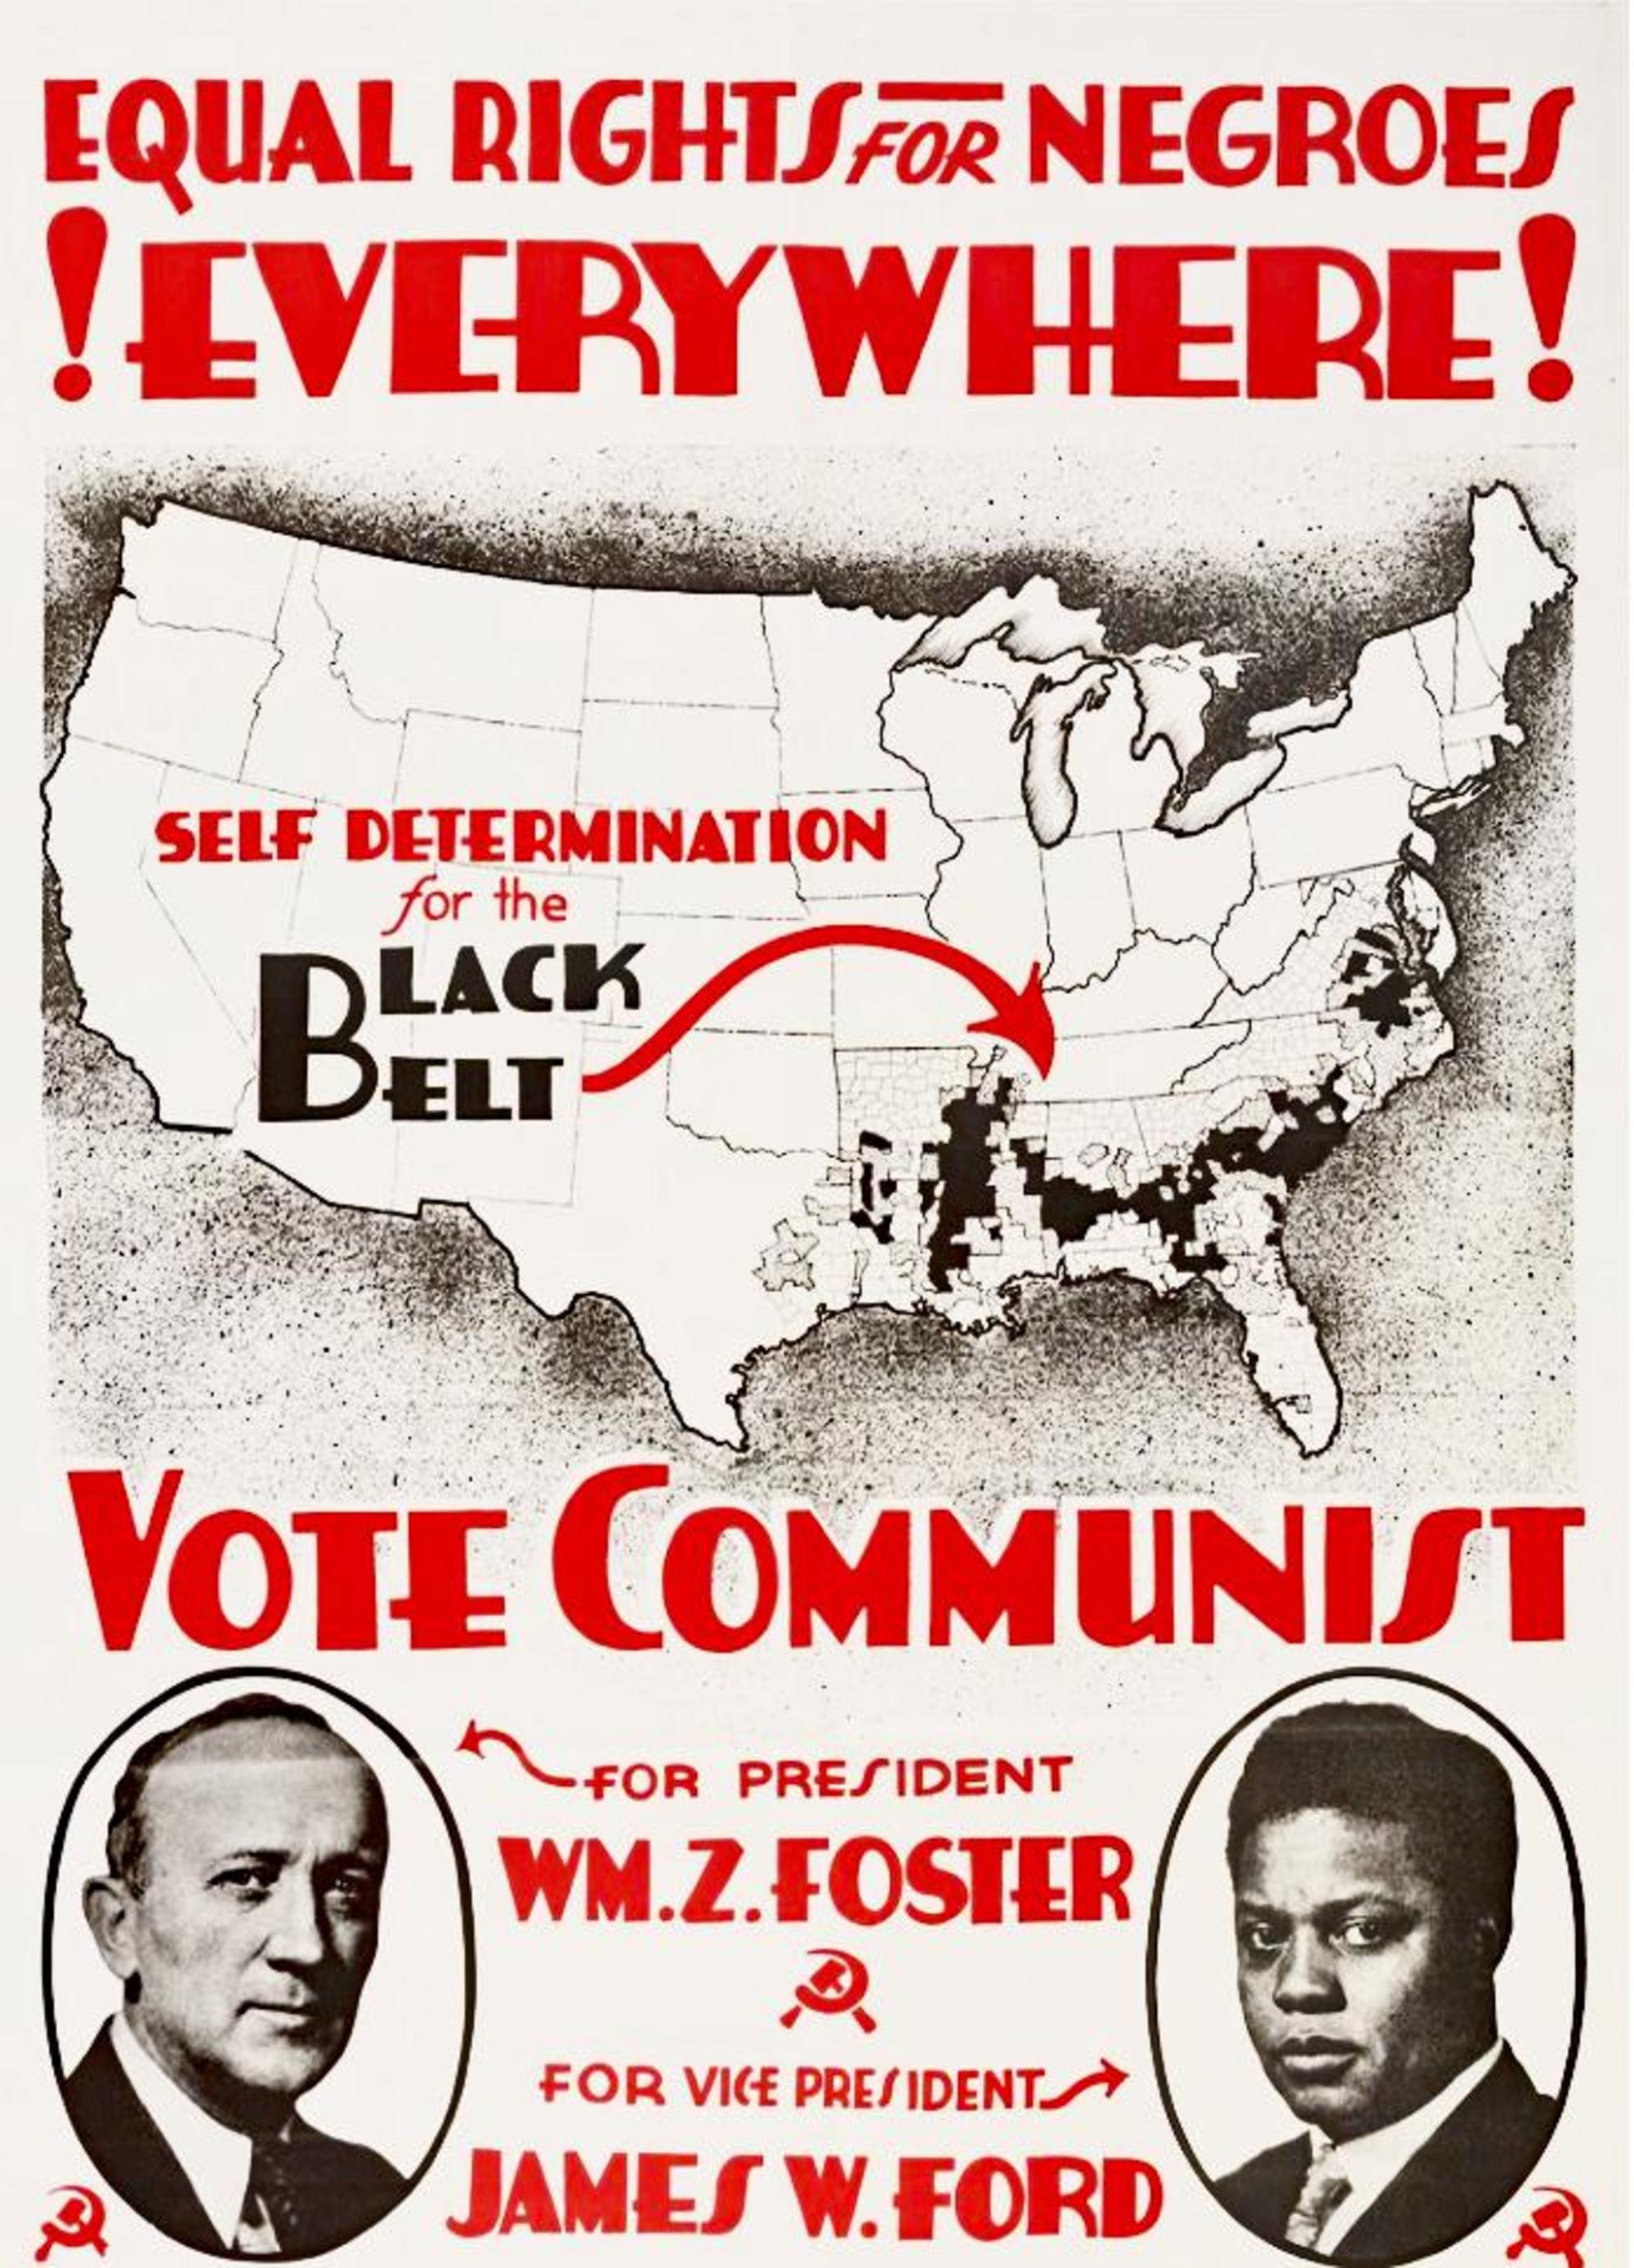 Cartel del Partido Comunista de Estados Unidos por la autodeterminación del pueblo negro